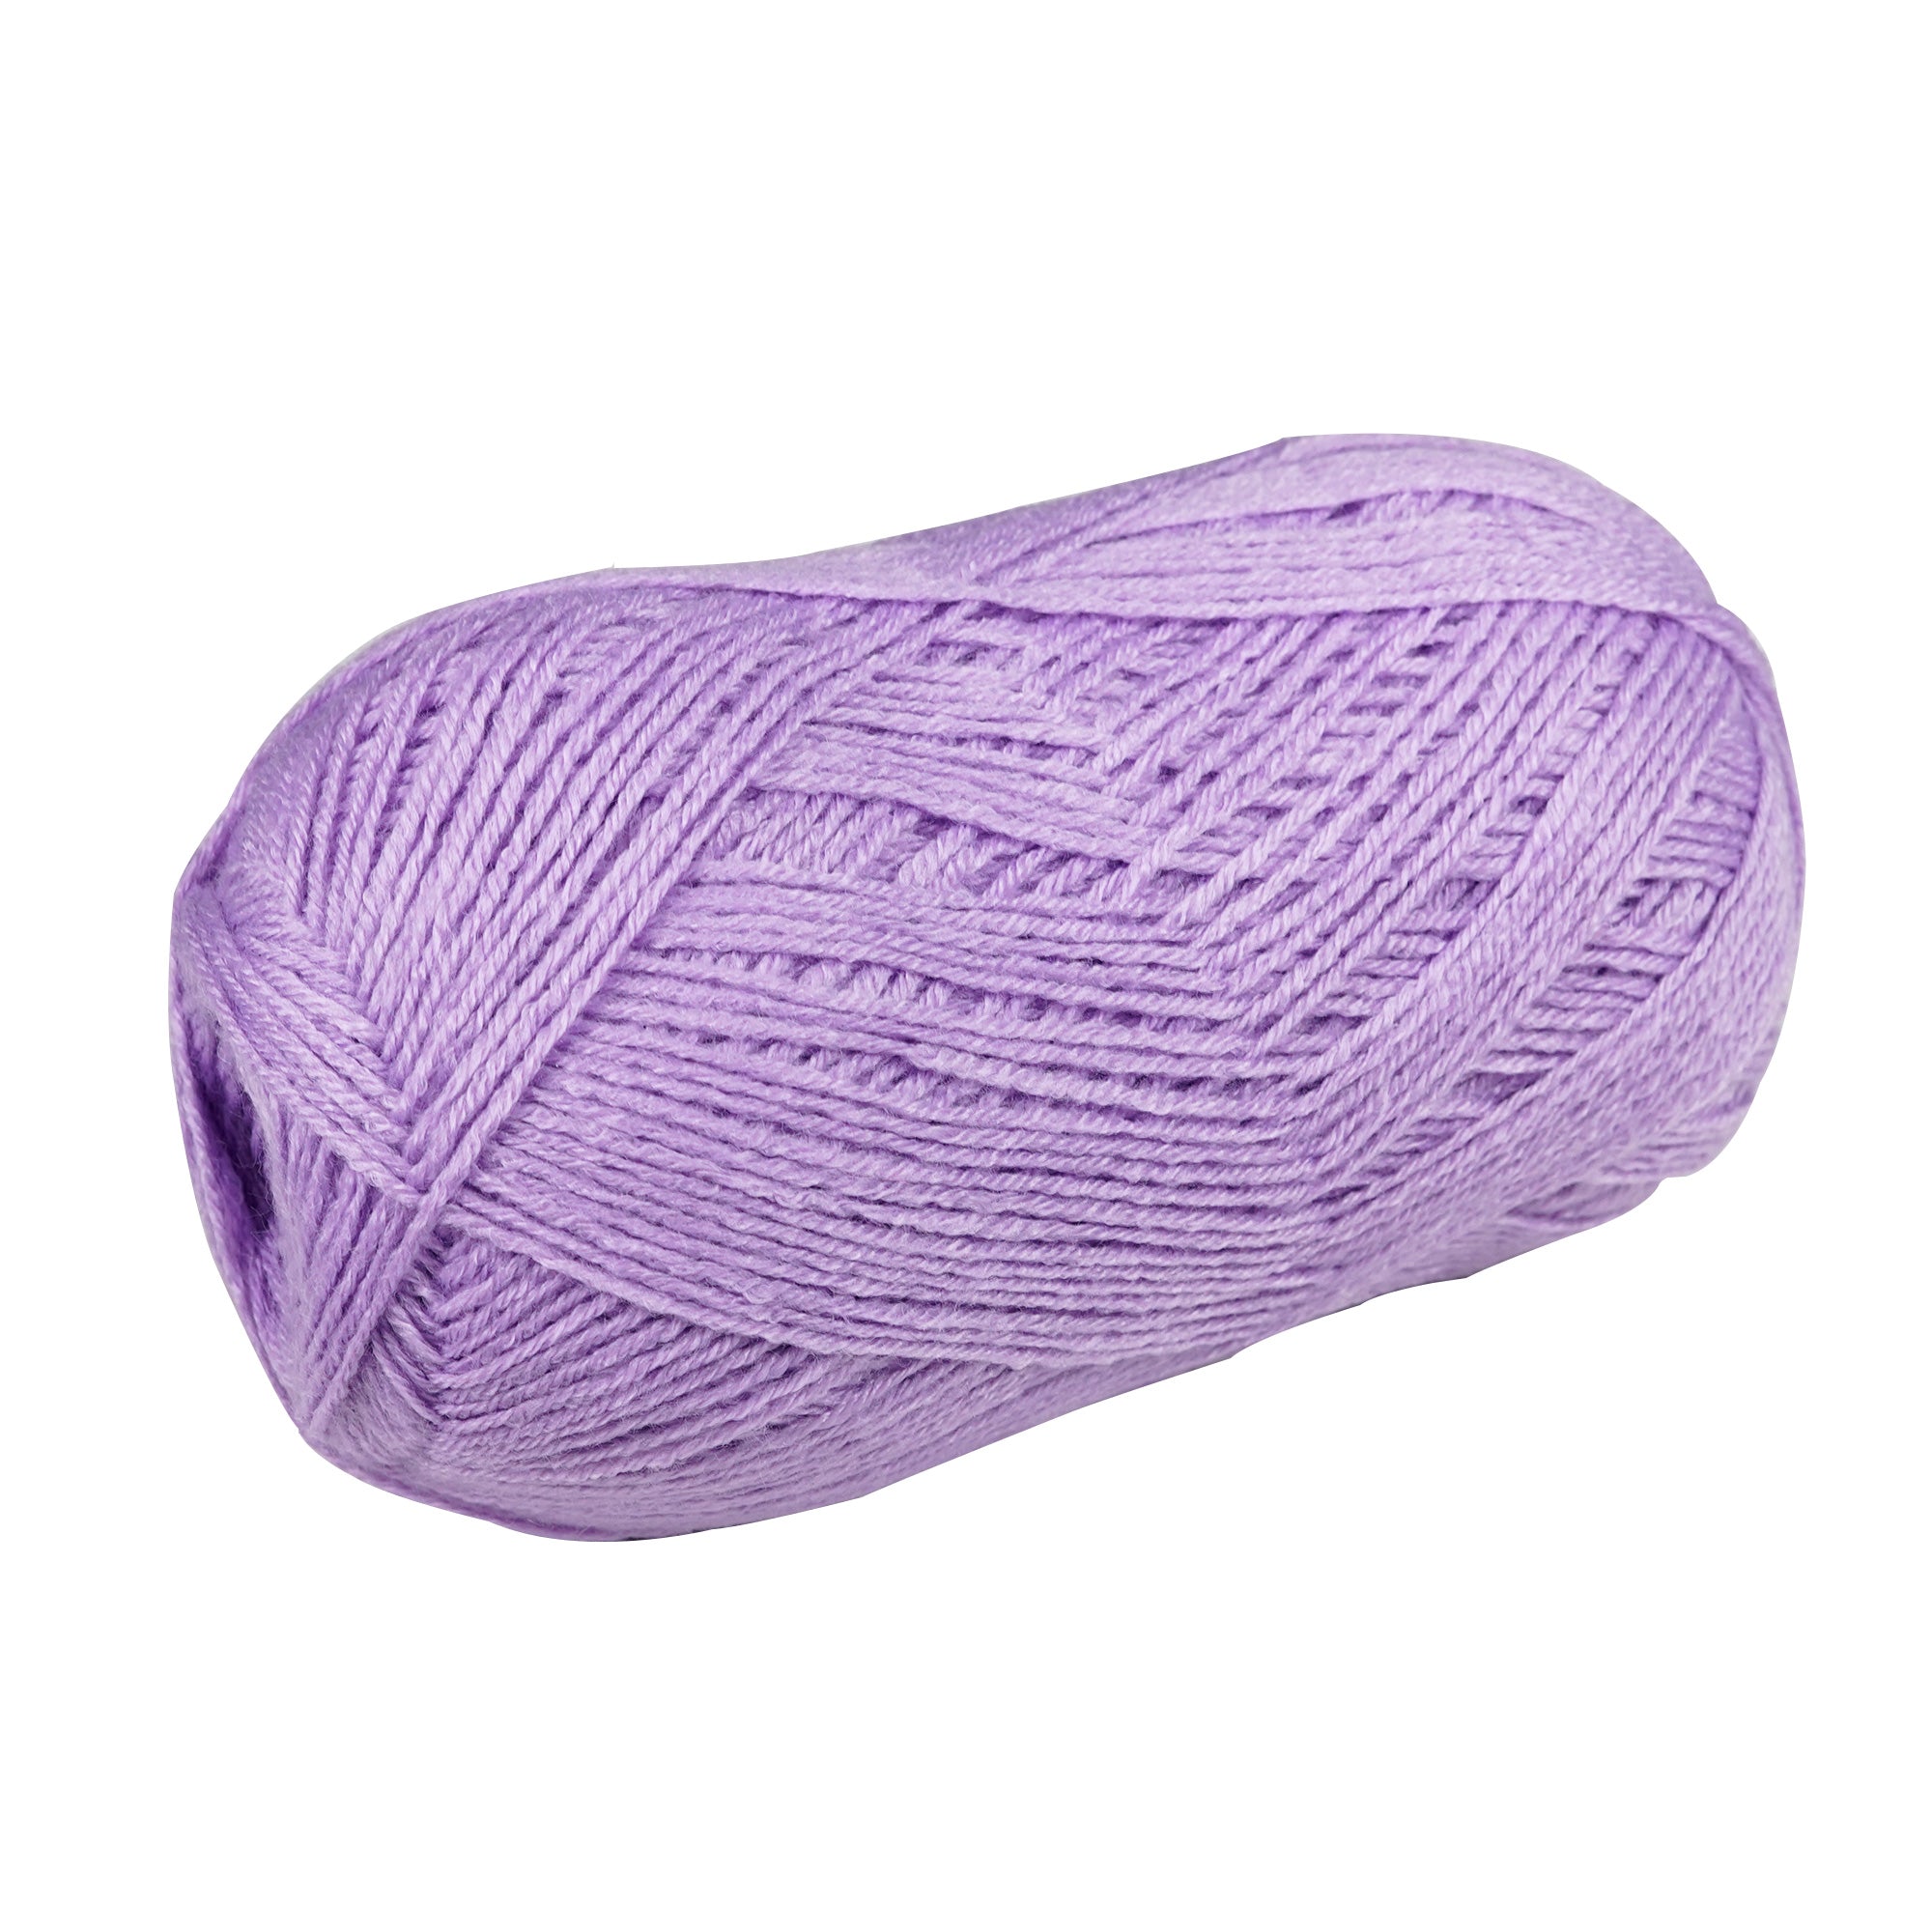 Porta Craft Super Soft Baby Acrylic Yarn 100% 100Gm 420M 4Ply Soft Lilac - VC